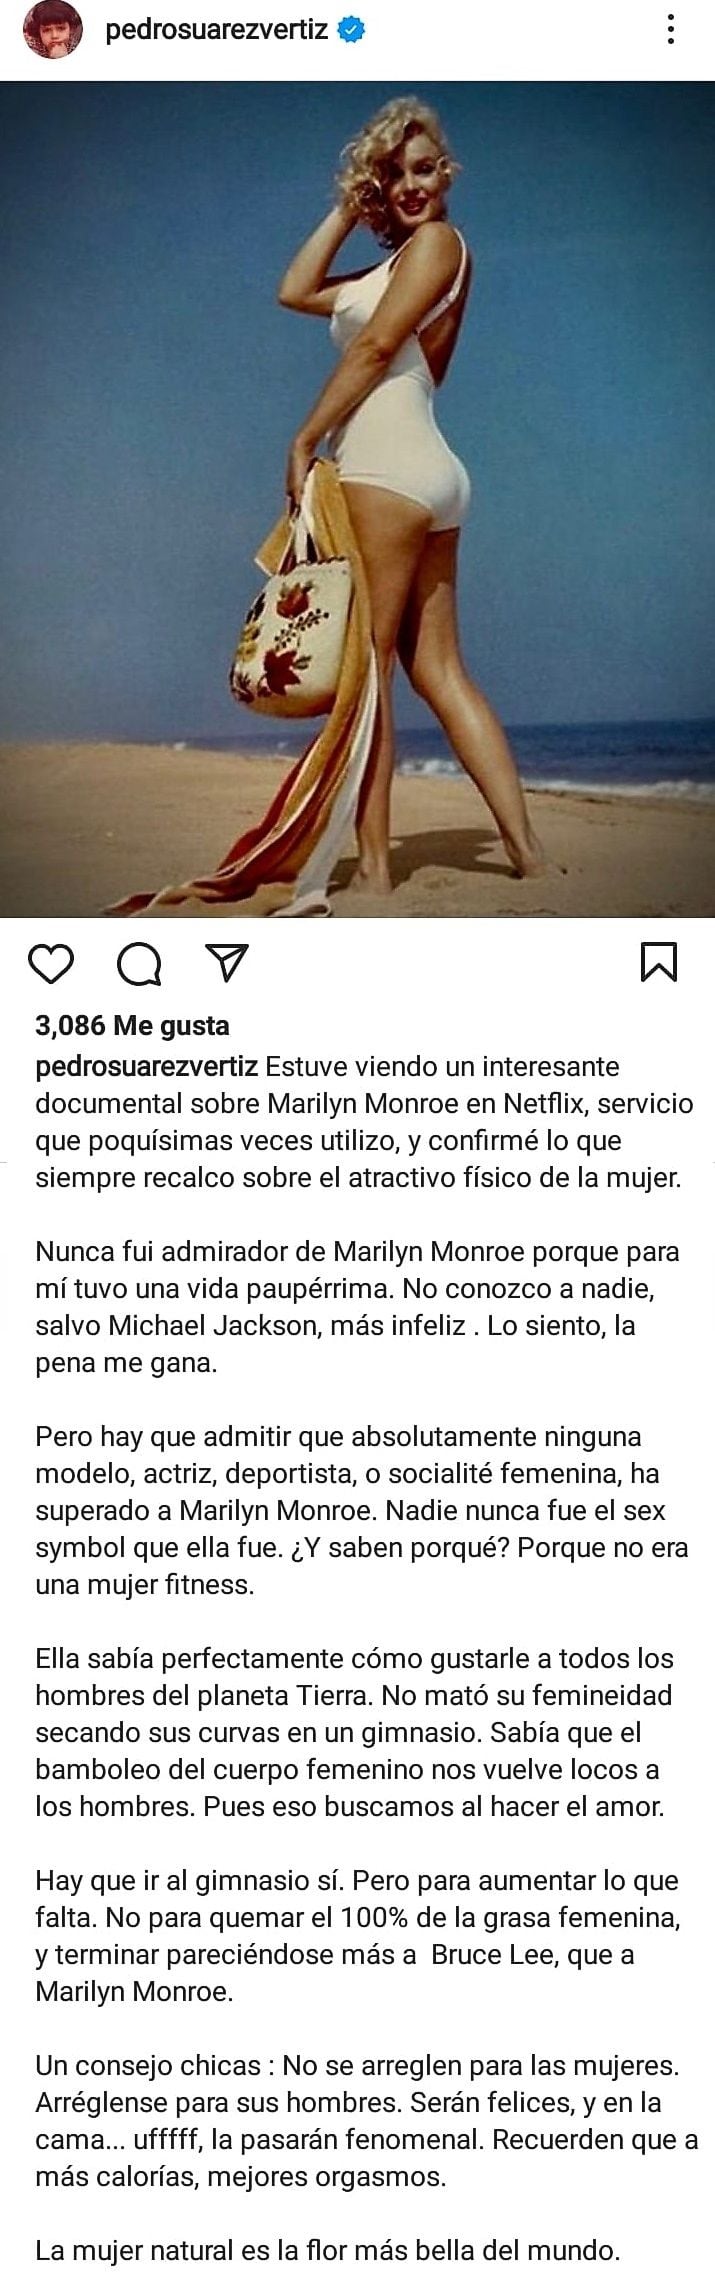 El post de Pedro Suárez Vértiz que generó controversia. (Foto: Instagram)